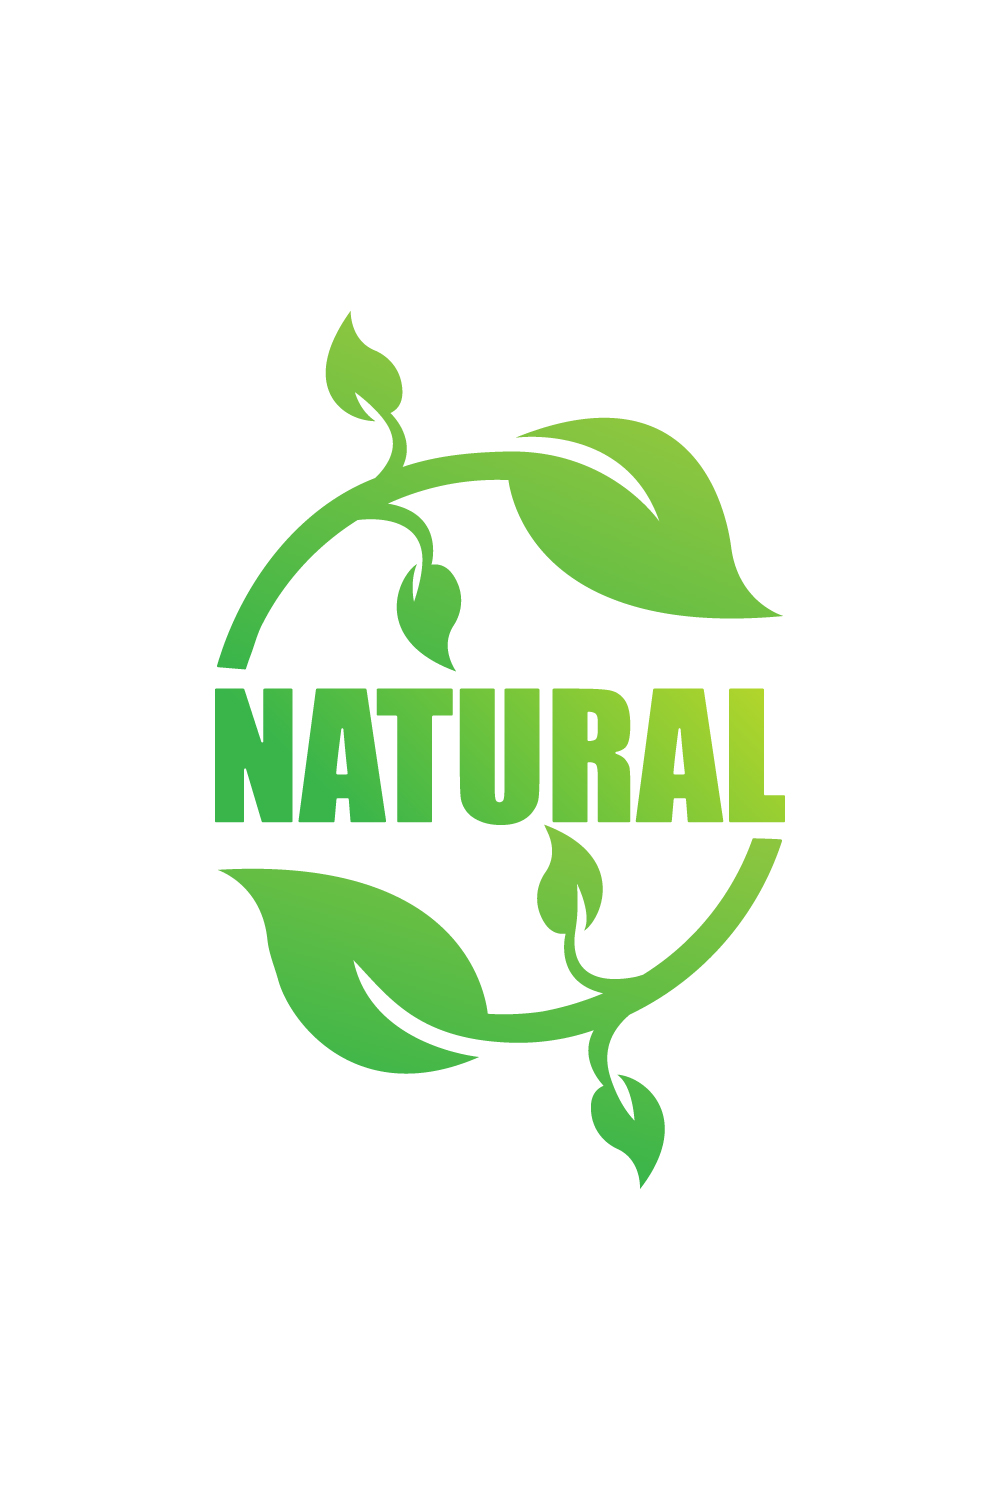 Natural leaf logo design vector icon Green leaf logo best icon Natural Food logo template arts Green Vegetable logo monogram illustration pinterest preview image.